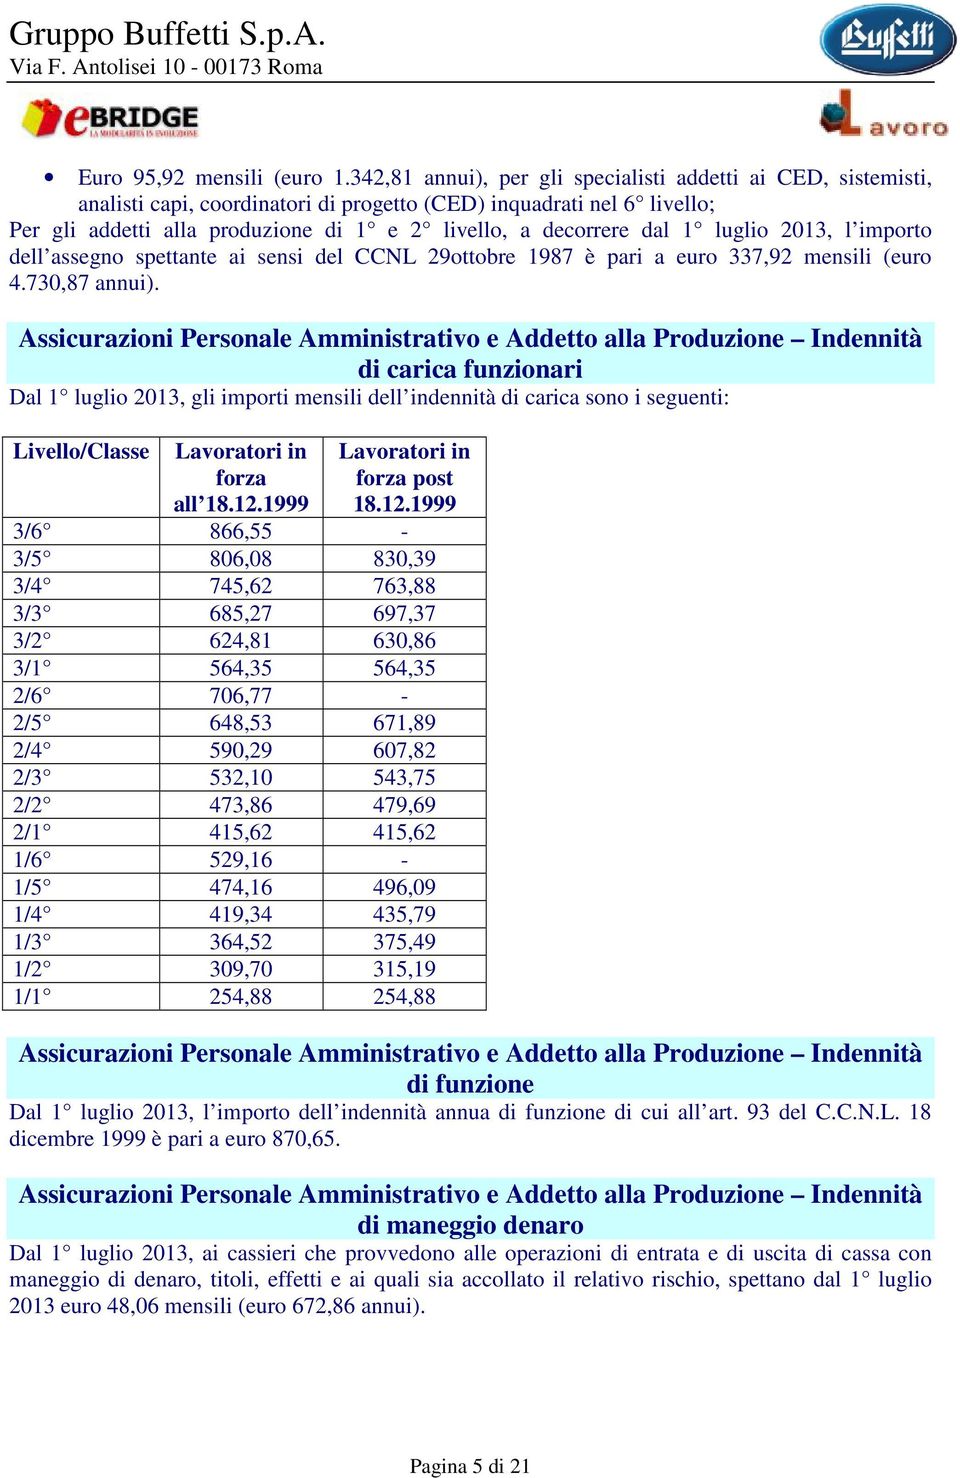 dal 1 luglio 2013, l importo dell assegno spettante ai sensi del CCNL 29ottobre 1987 è pari a euro 337,92 mensili (euro 4.730,87 annui).